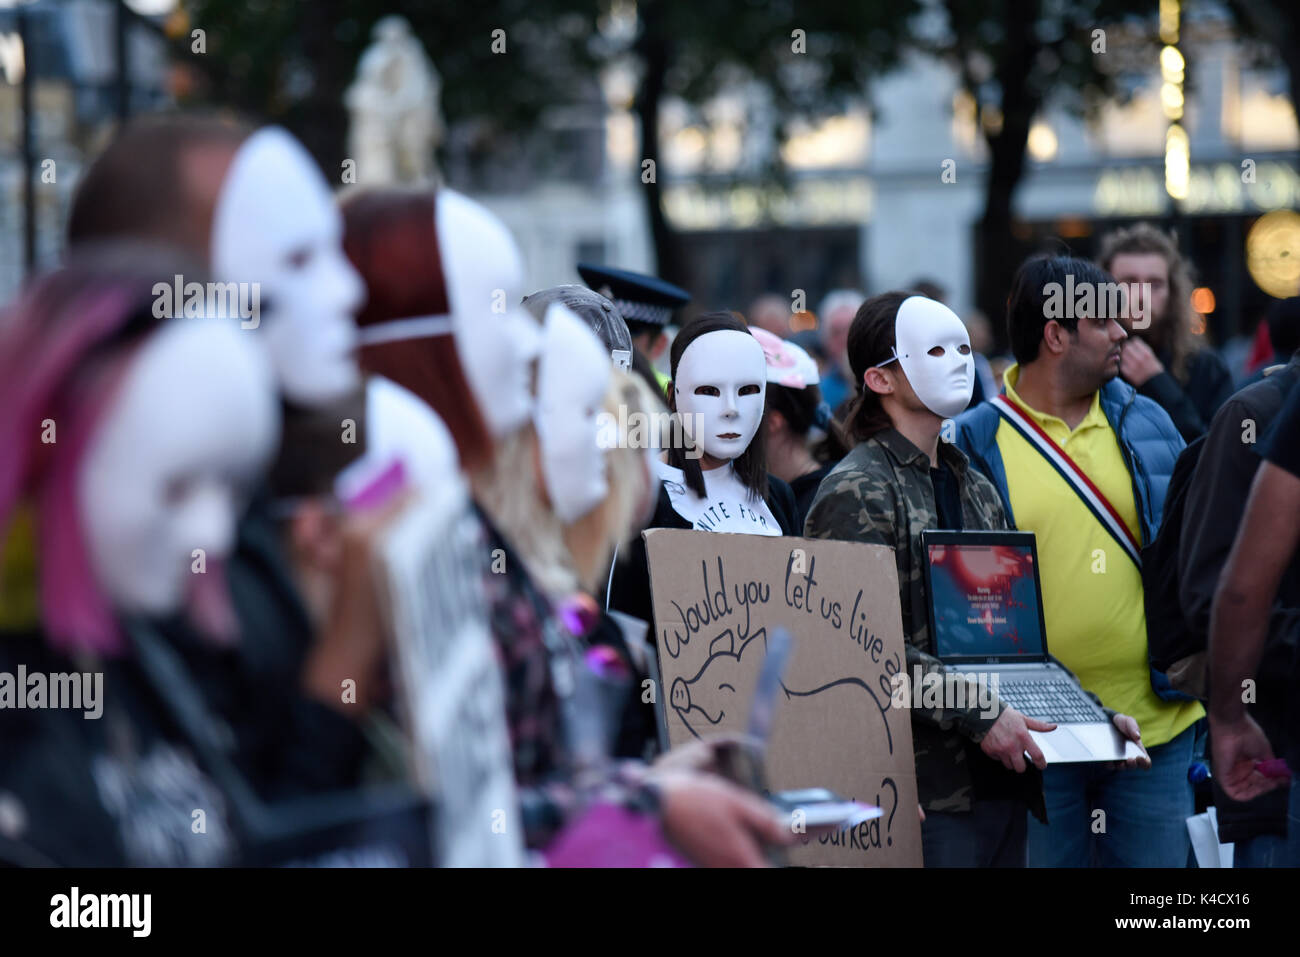 Les Terriens de l'expérience des défenseurs des droits des animaux qui protestaient devant Burger King à Leicester Square, Londres. Les manifestants portant des masques anonymes Banque D'Images